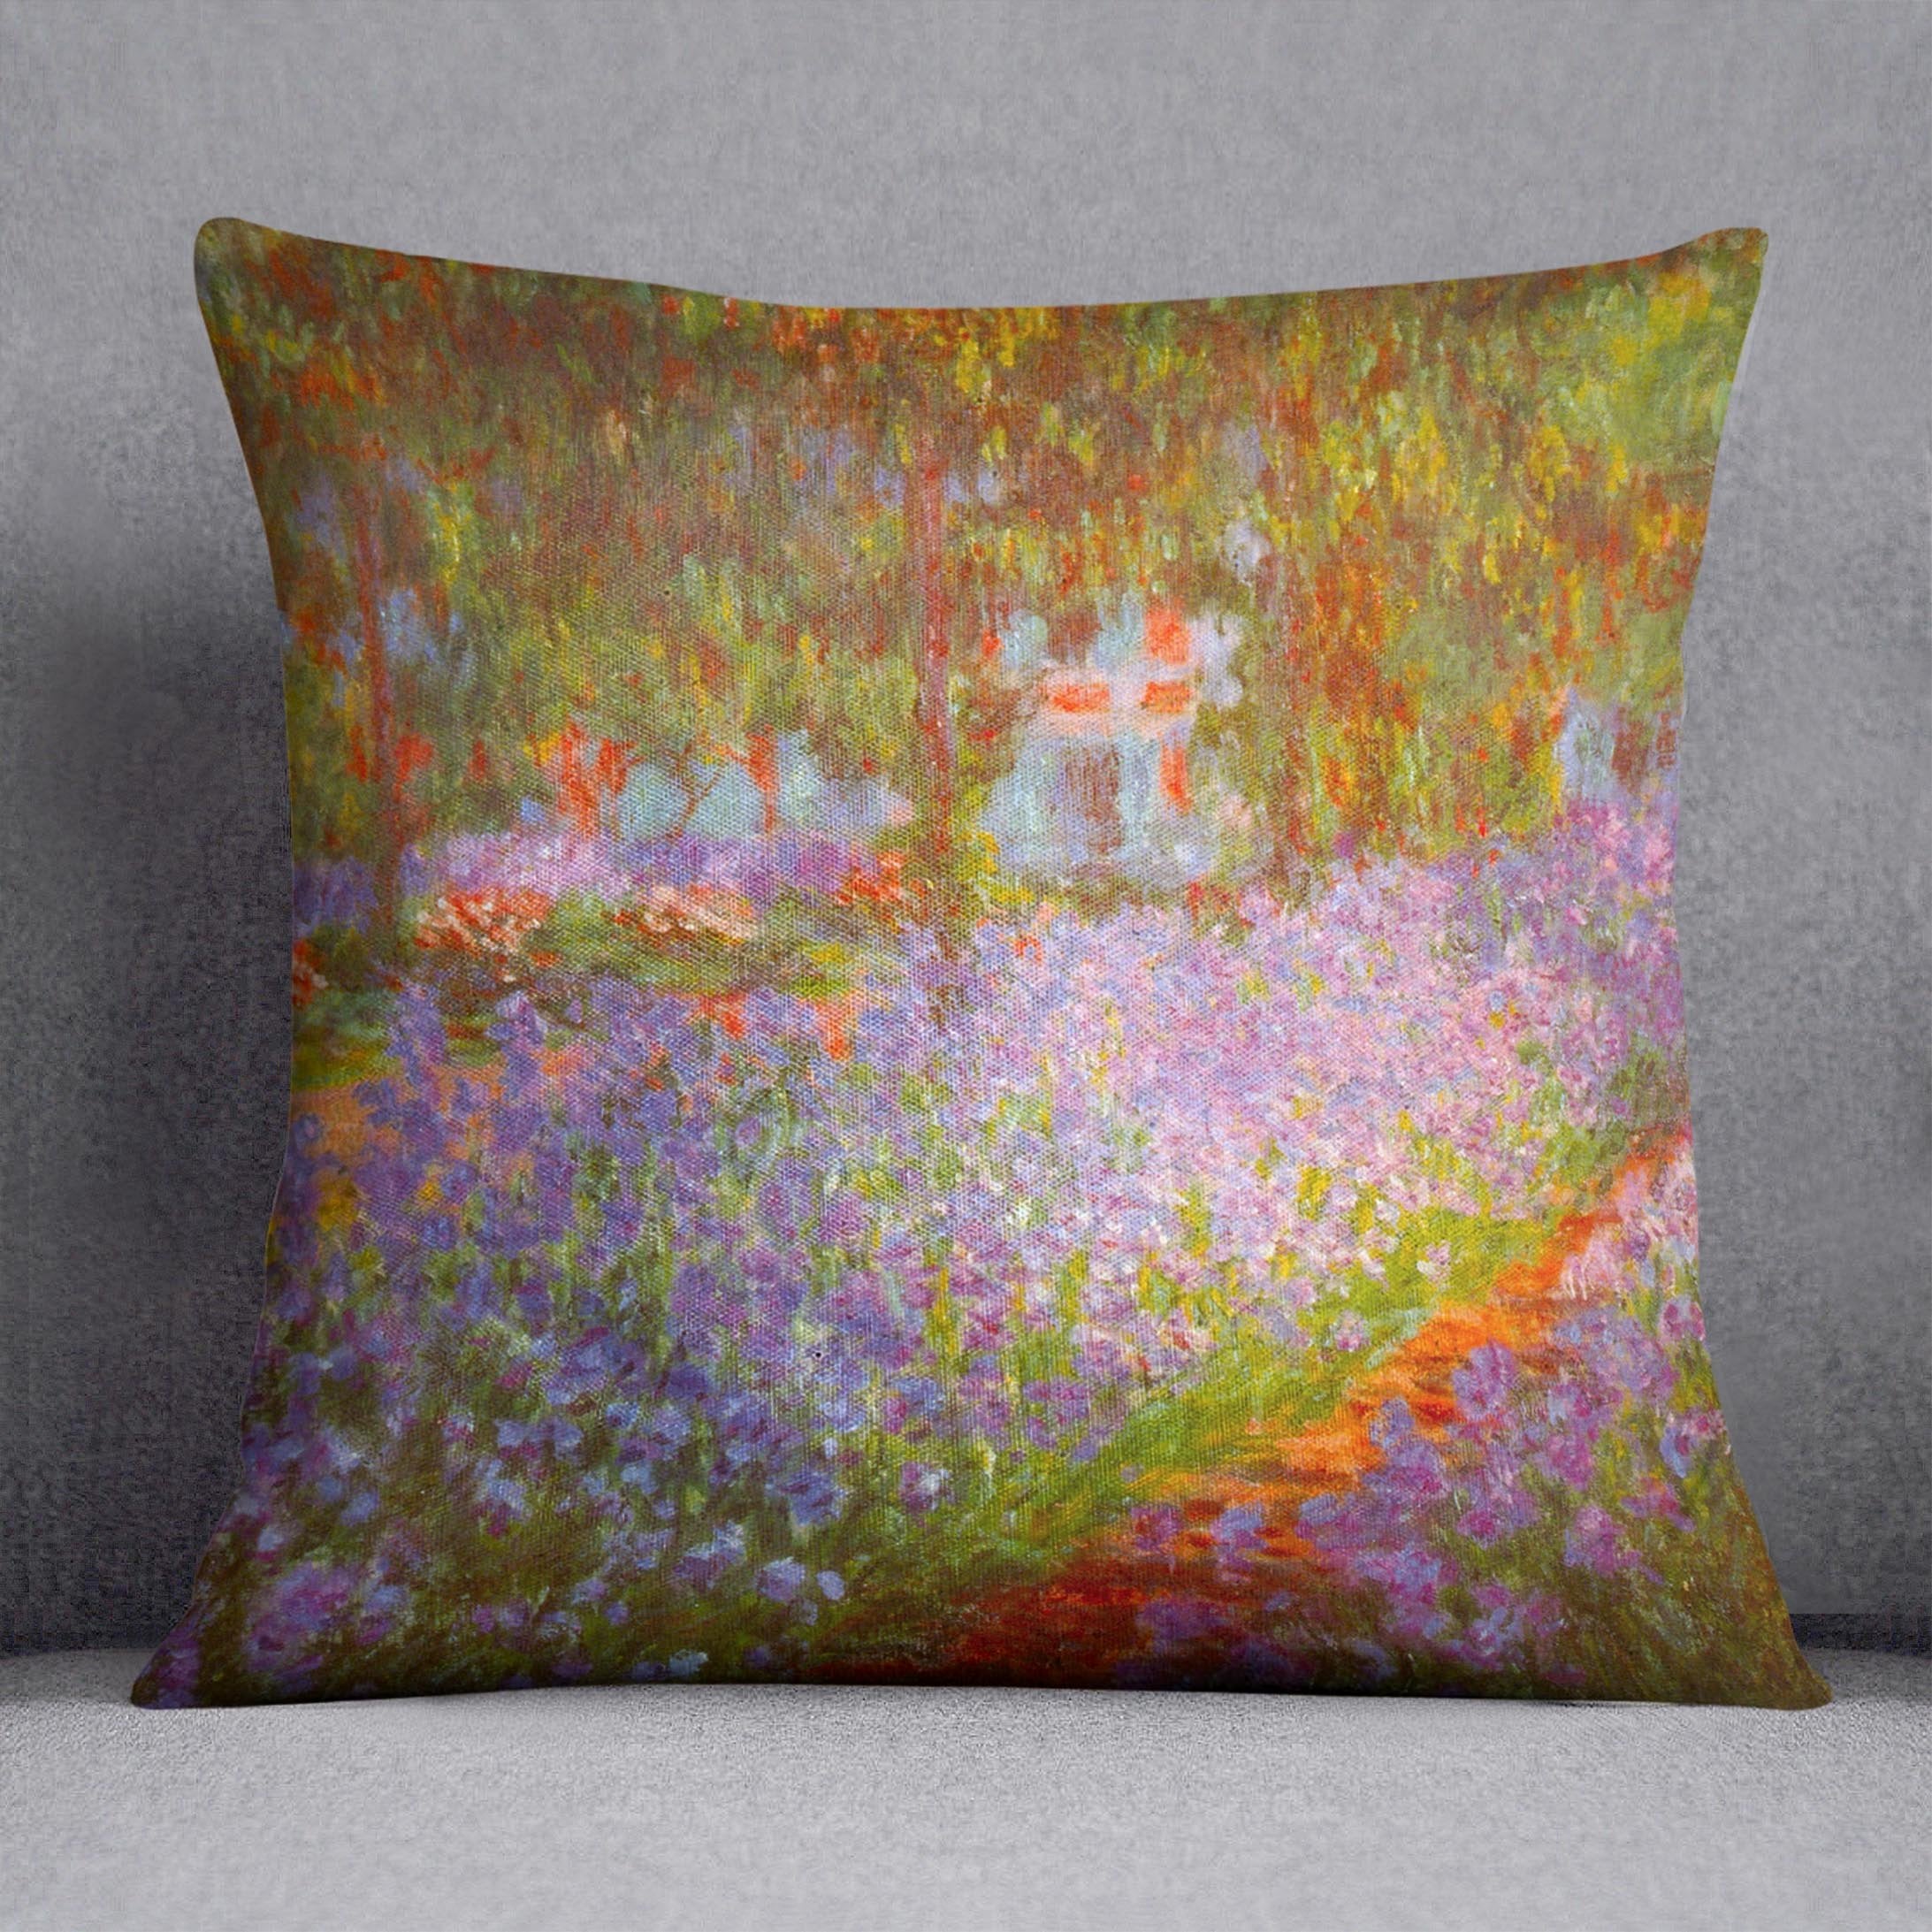 Monet's Garden by Monet Throw Pillow